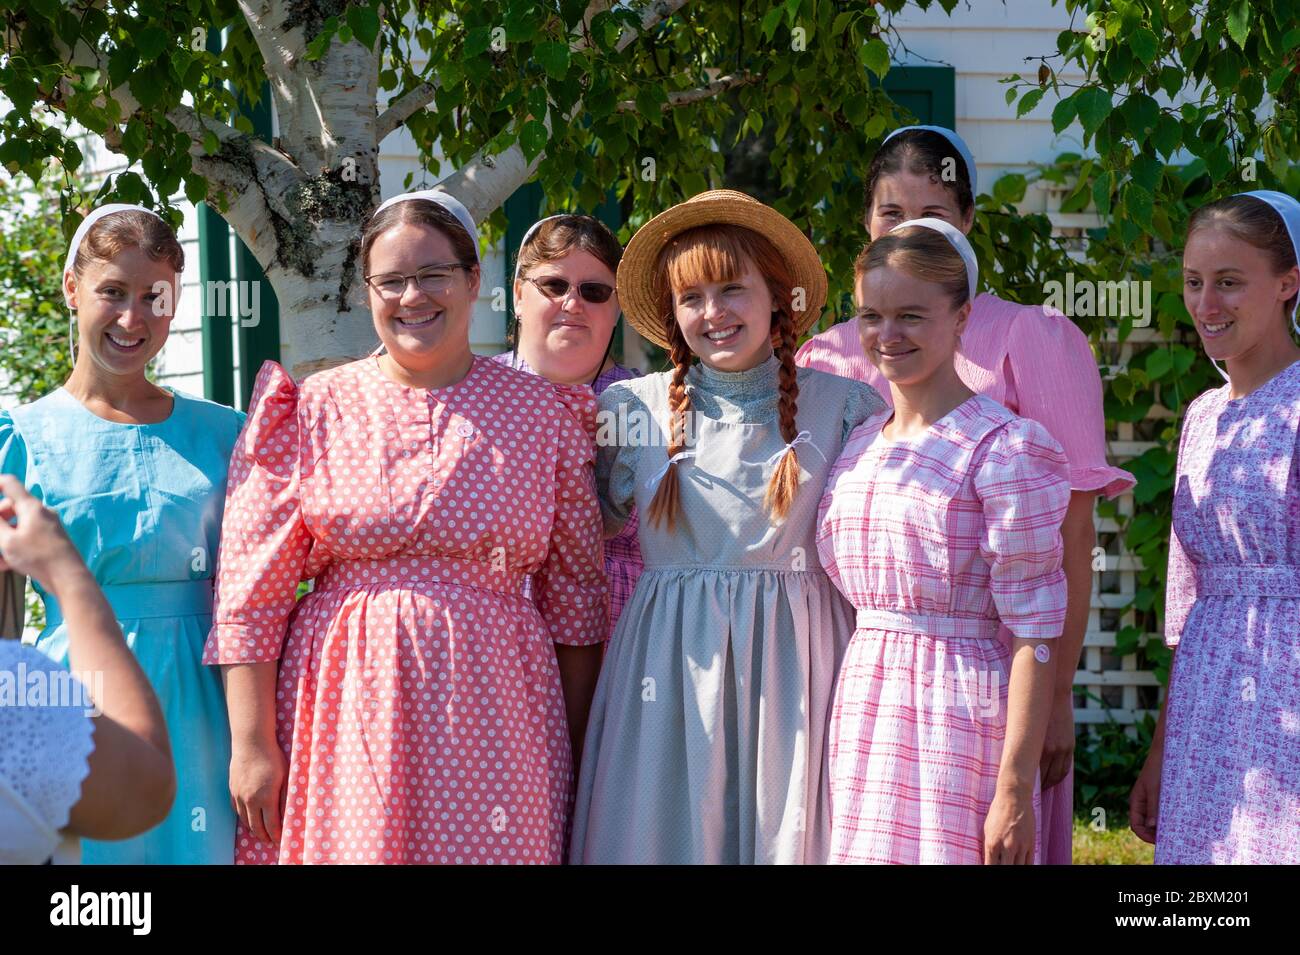 Gruppo di ragazze Amish in visita Green Gables, in posa per un'istantanea con un'attrice nel personaggio immaginario di Anne Shirley. Cavendish, PEI, Canada. Foto Stock